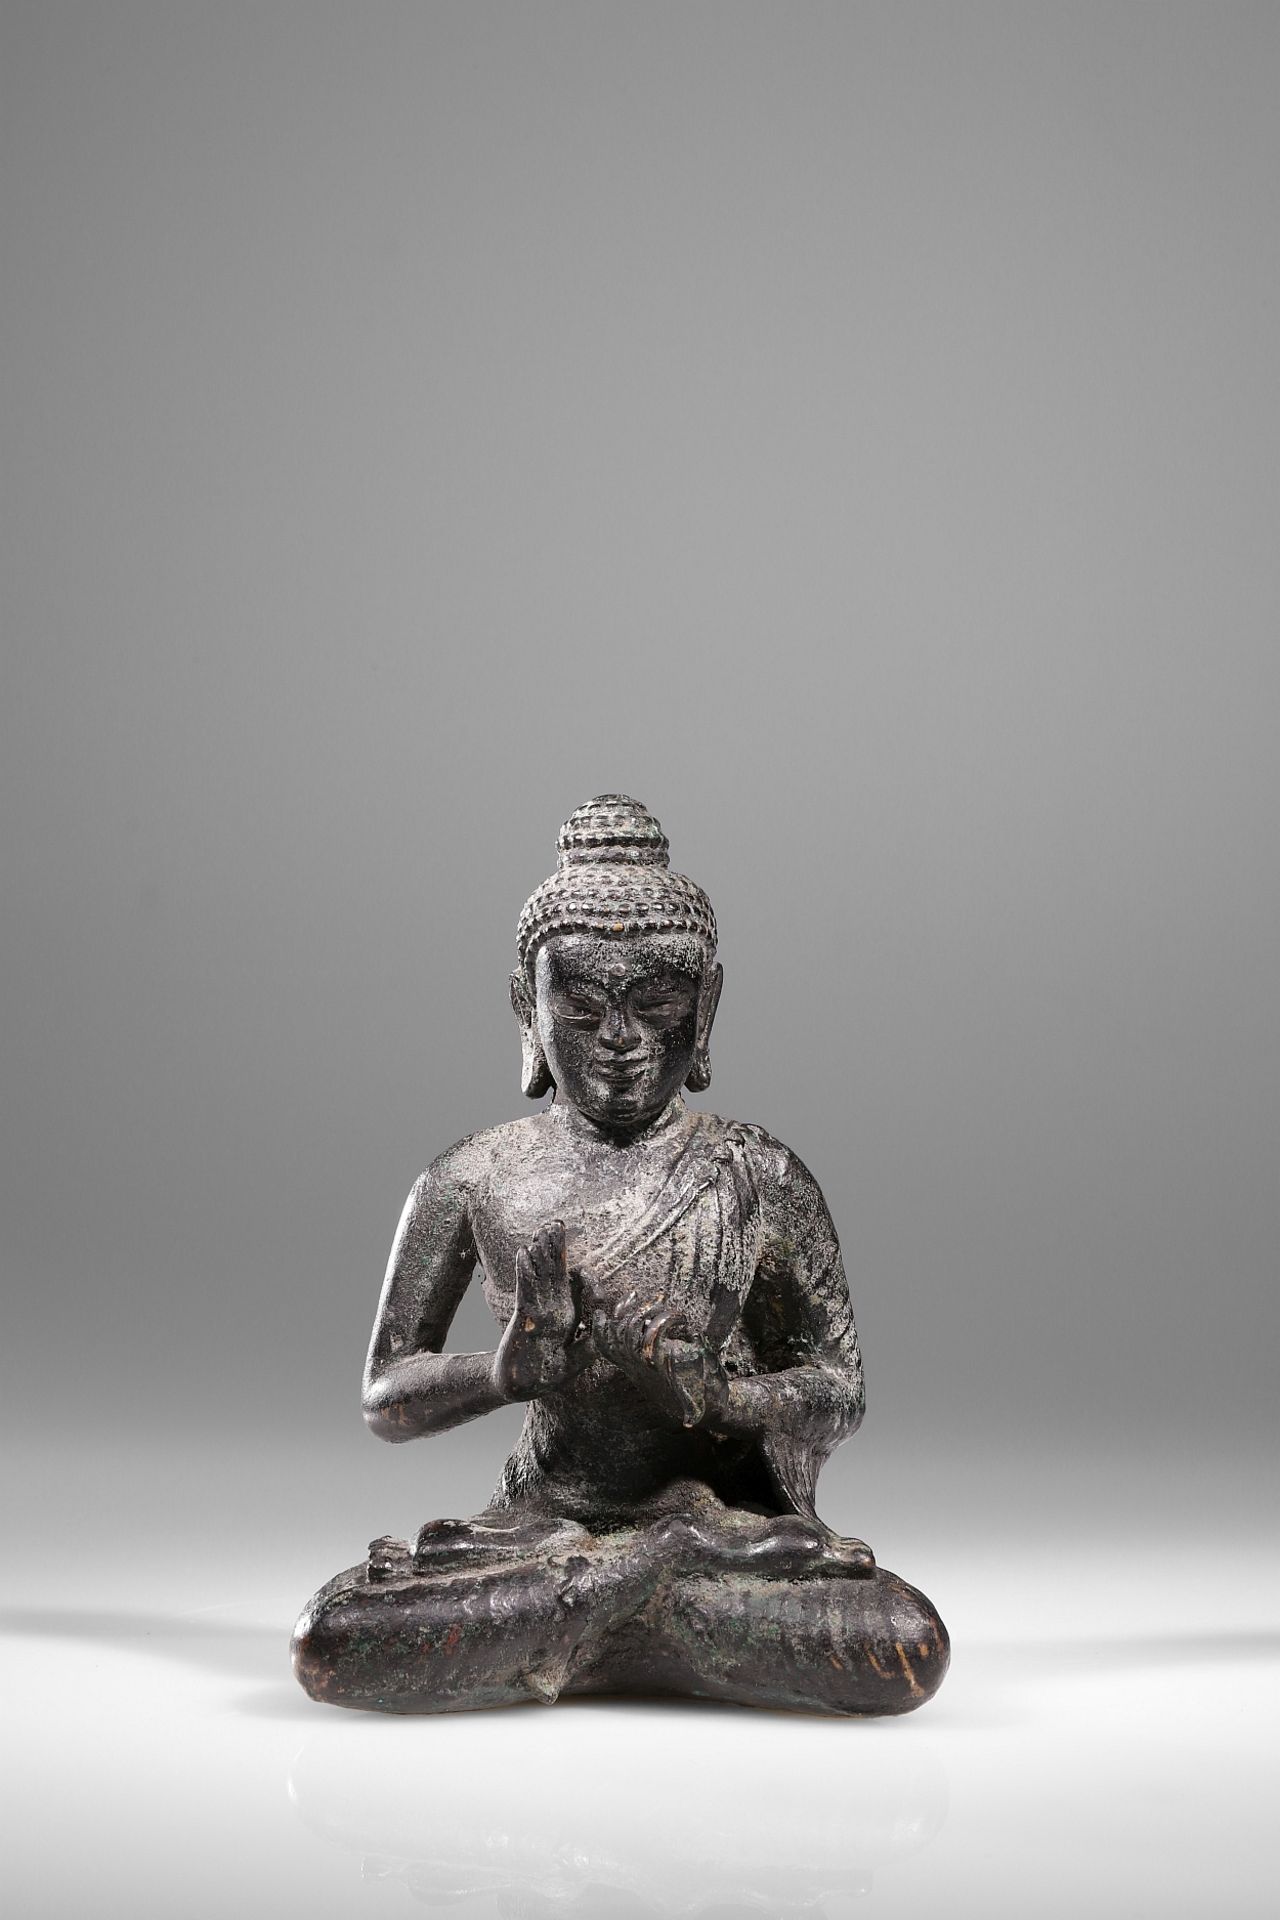 BUDDHA SHOWING THE DHARMACHAKRA MUDRA